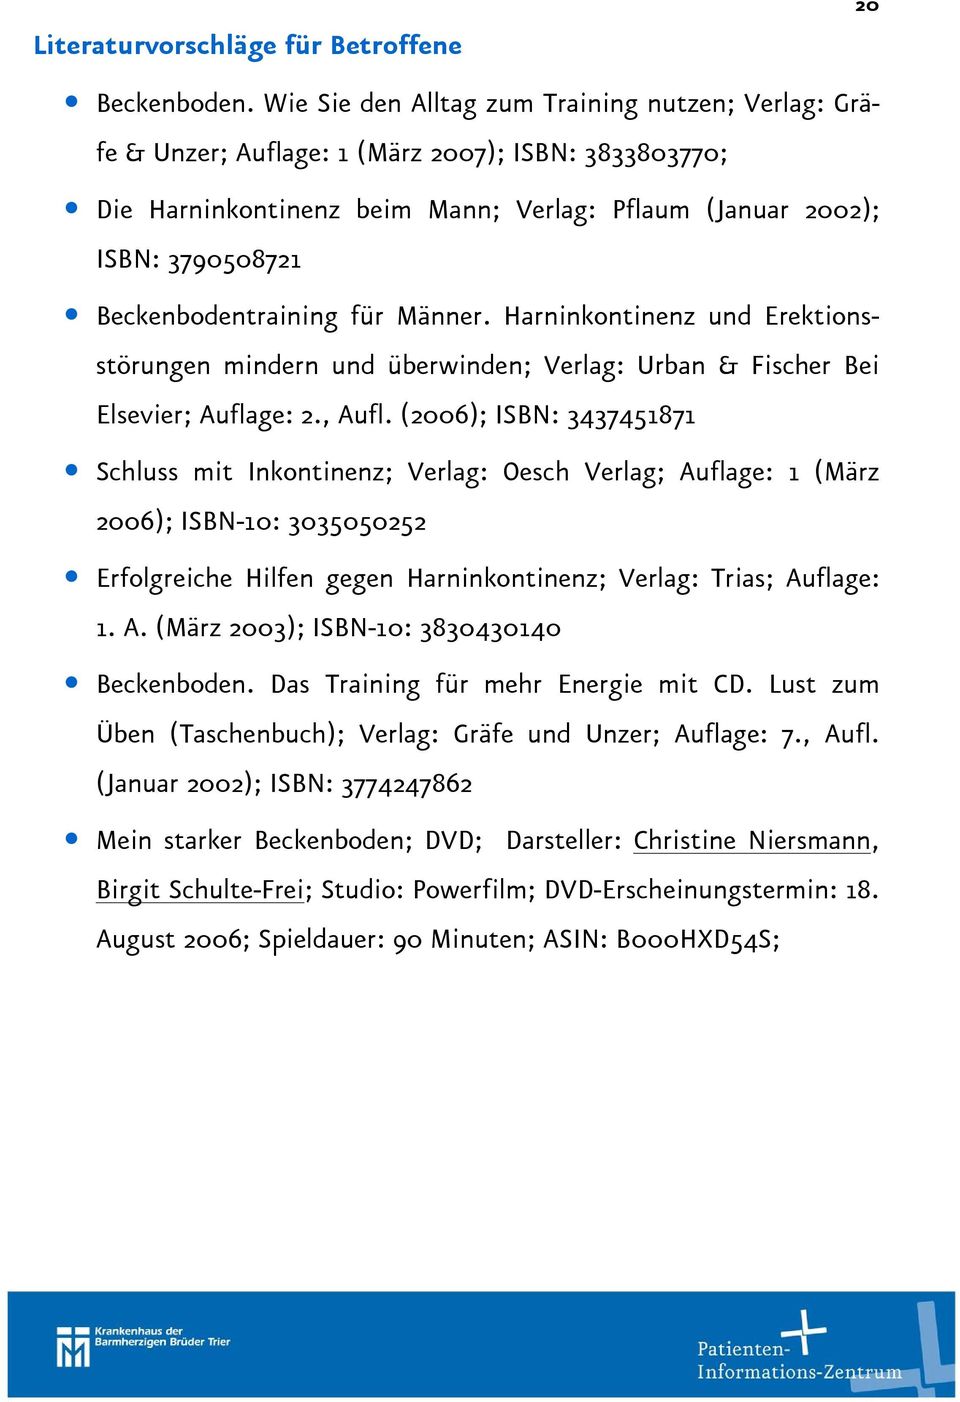 Beckenbodentraining für Männer. Harninkontinenz und Erektionsstörungen mindern und überwinden; Verlag: Urban & Fischer Bei Elsevier; Auflage: 2., Aufl.